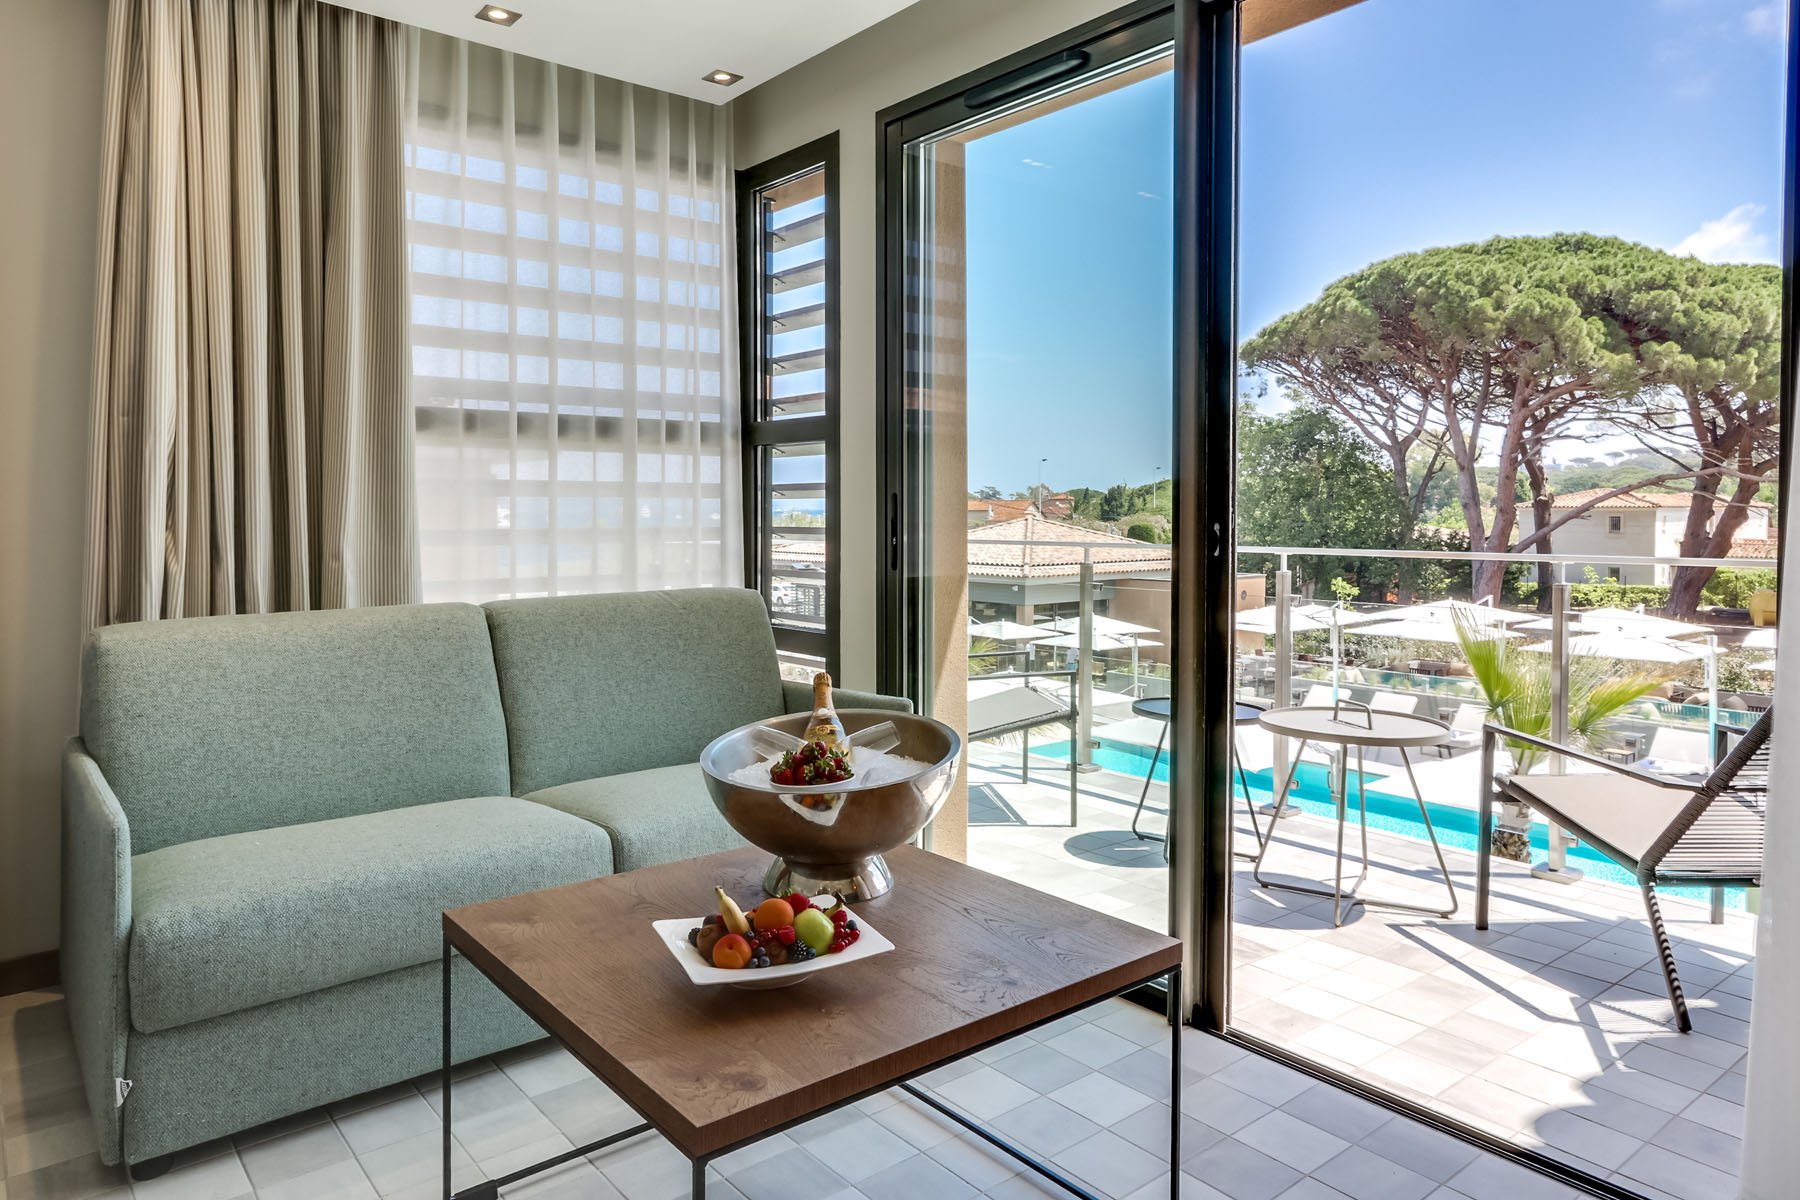 Chambre vue piscine - Kube Hotel Saint-Tropez - Côte d'Azur